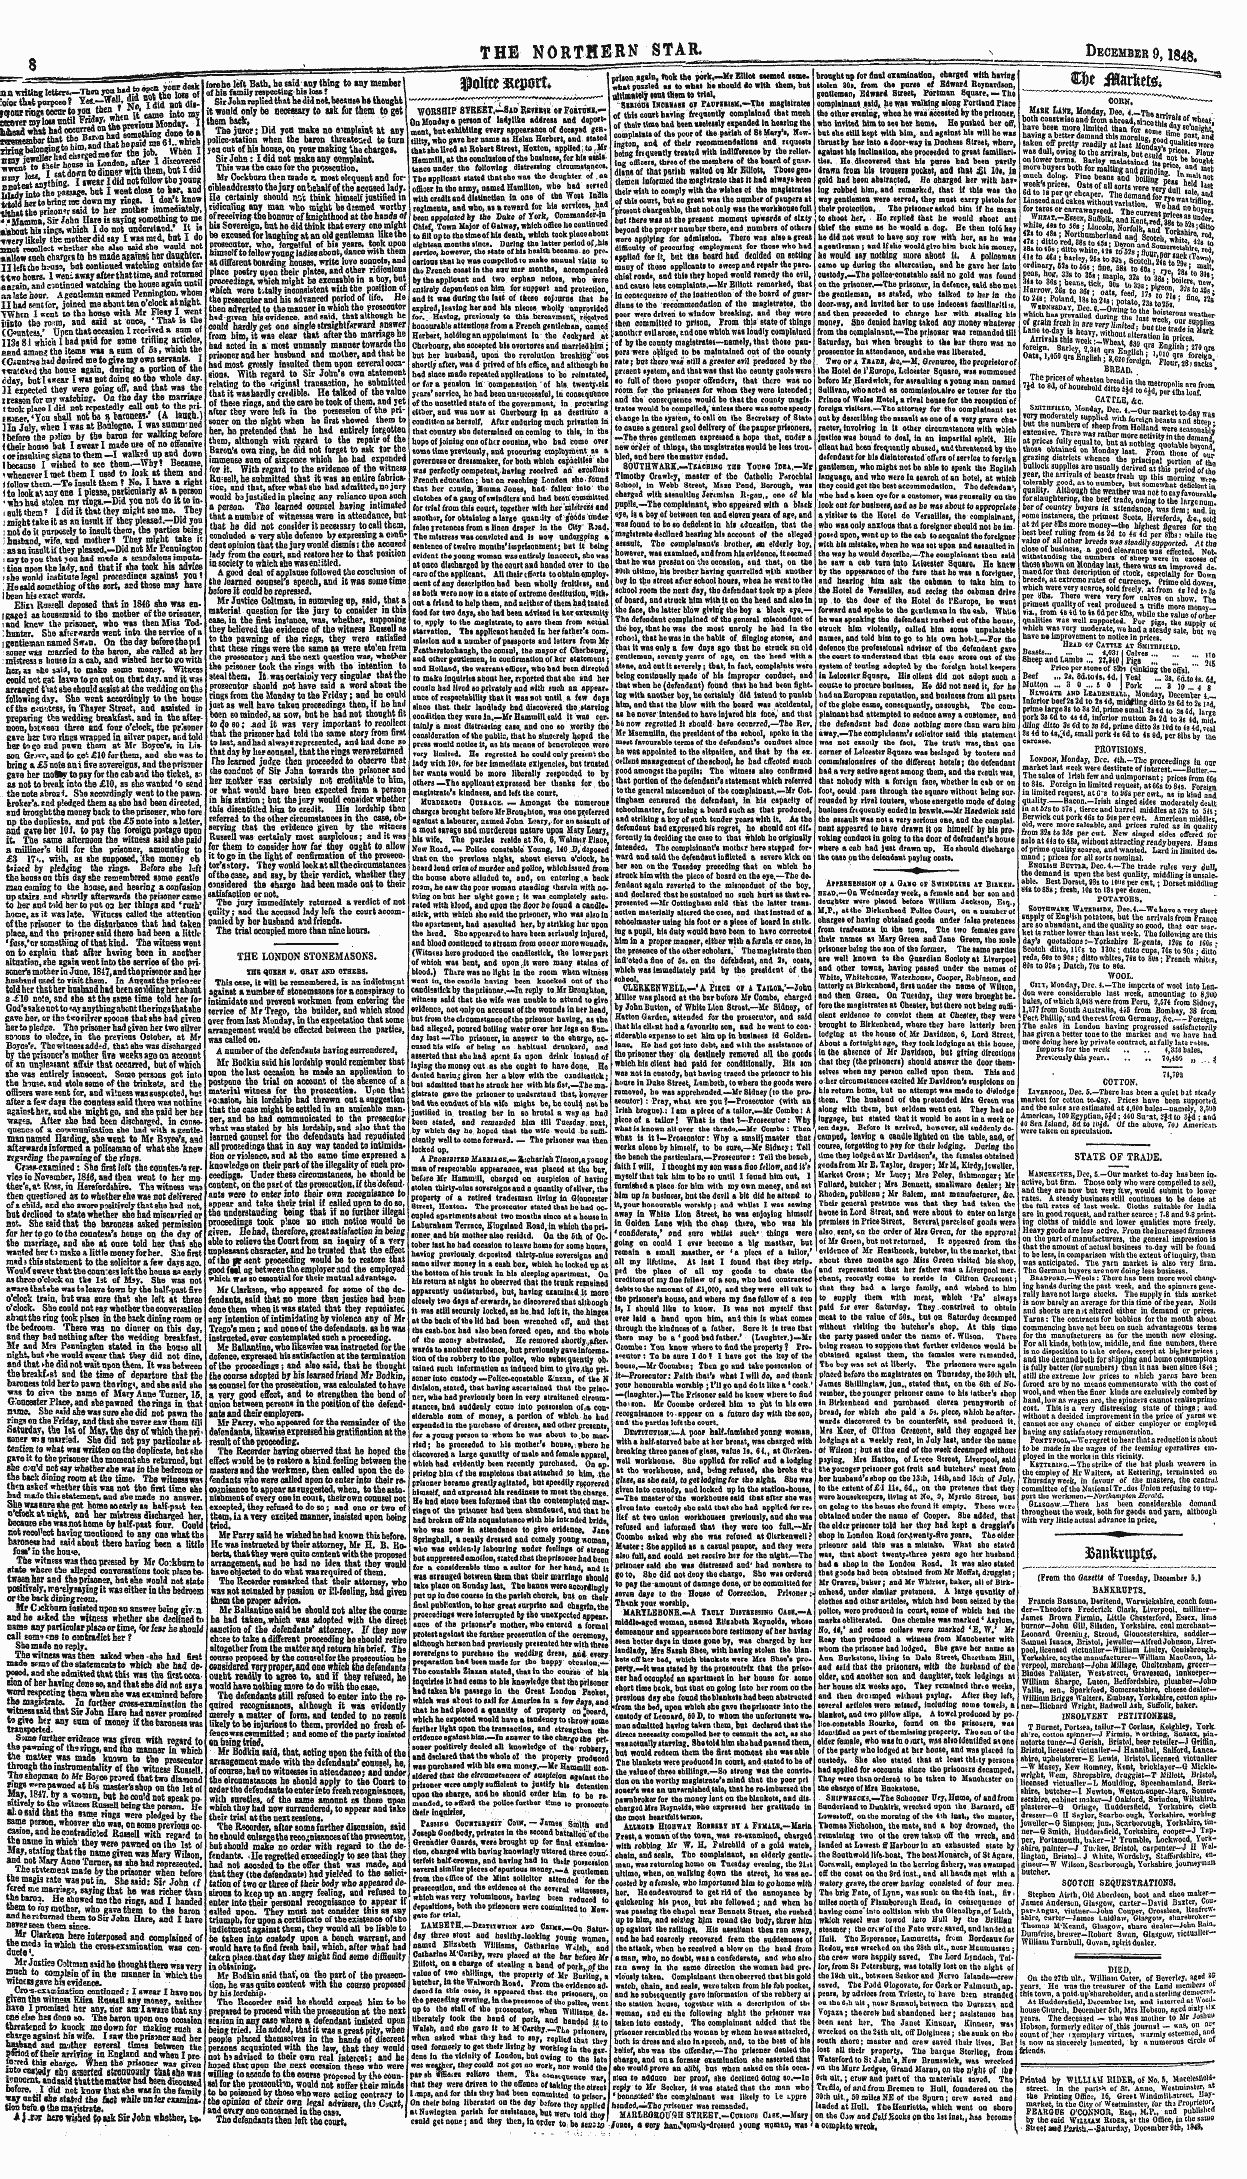 Northern Star (1837-1852): jS F Y, 3rd edition - Arfbebenbion Or A Gahq Or Swindlibs At B...